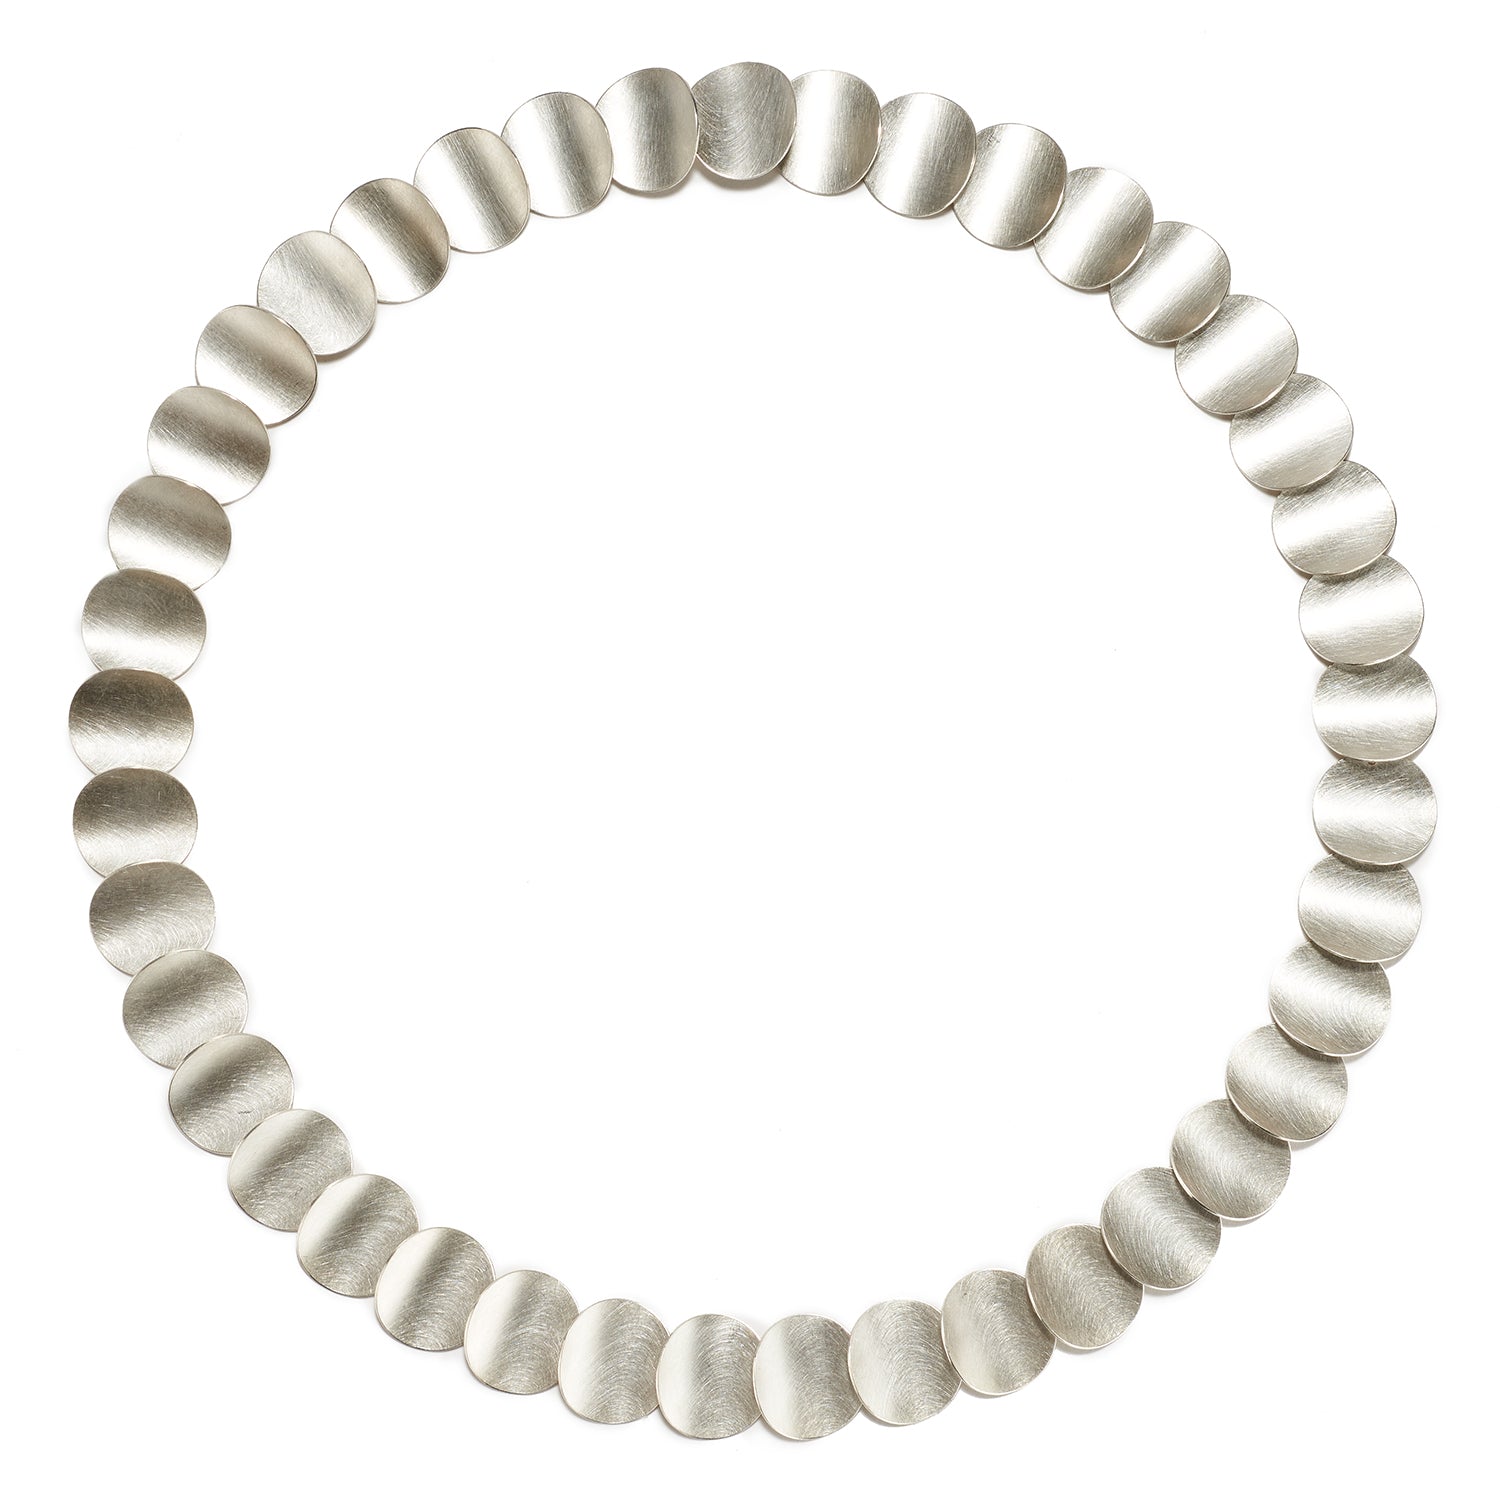 Silver Circles Necklace